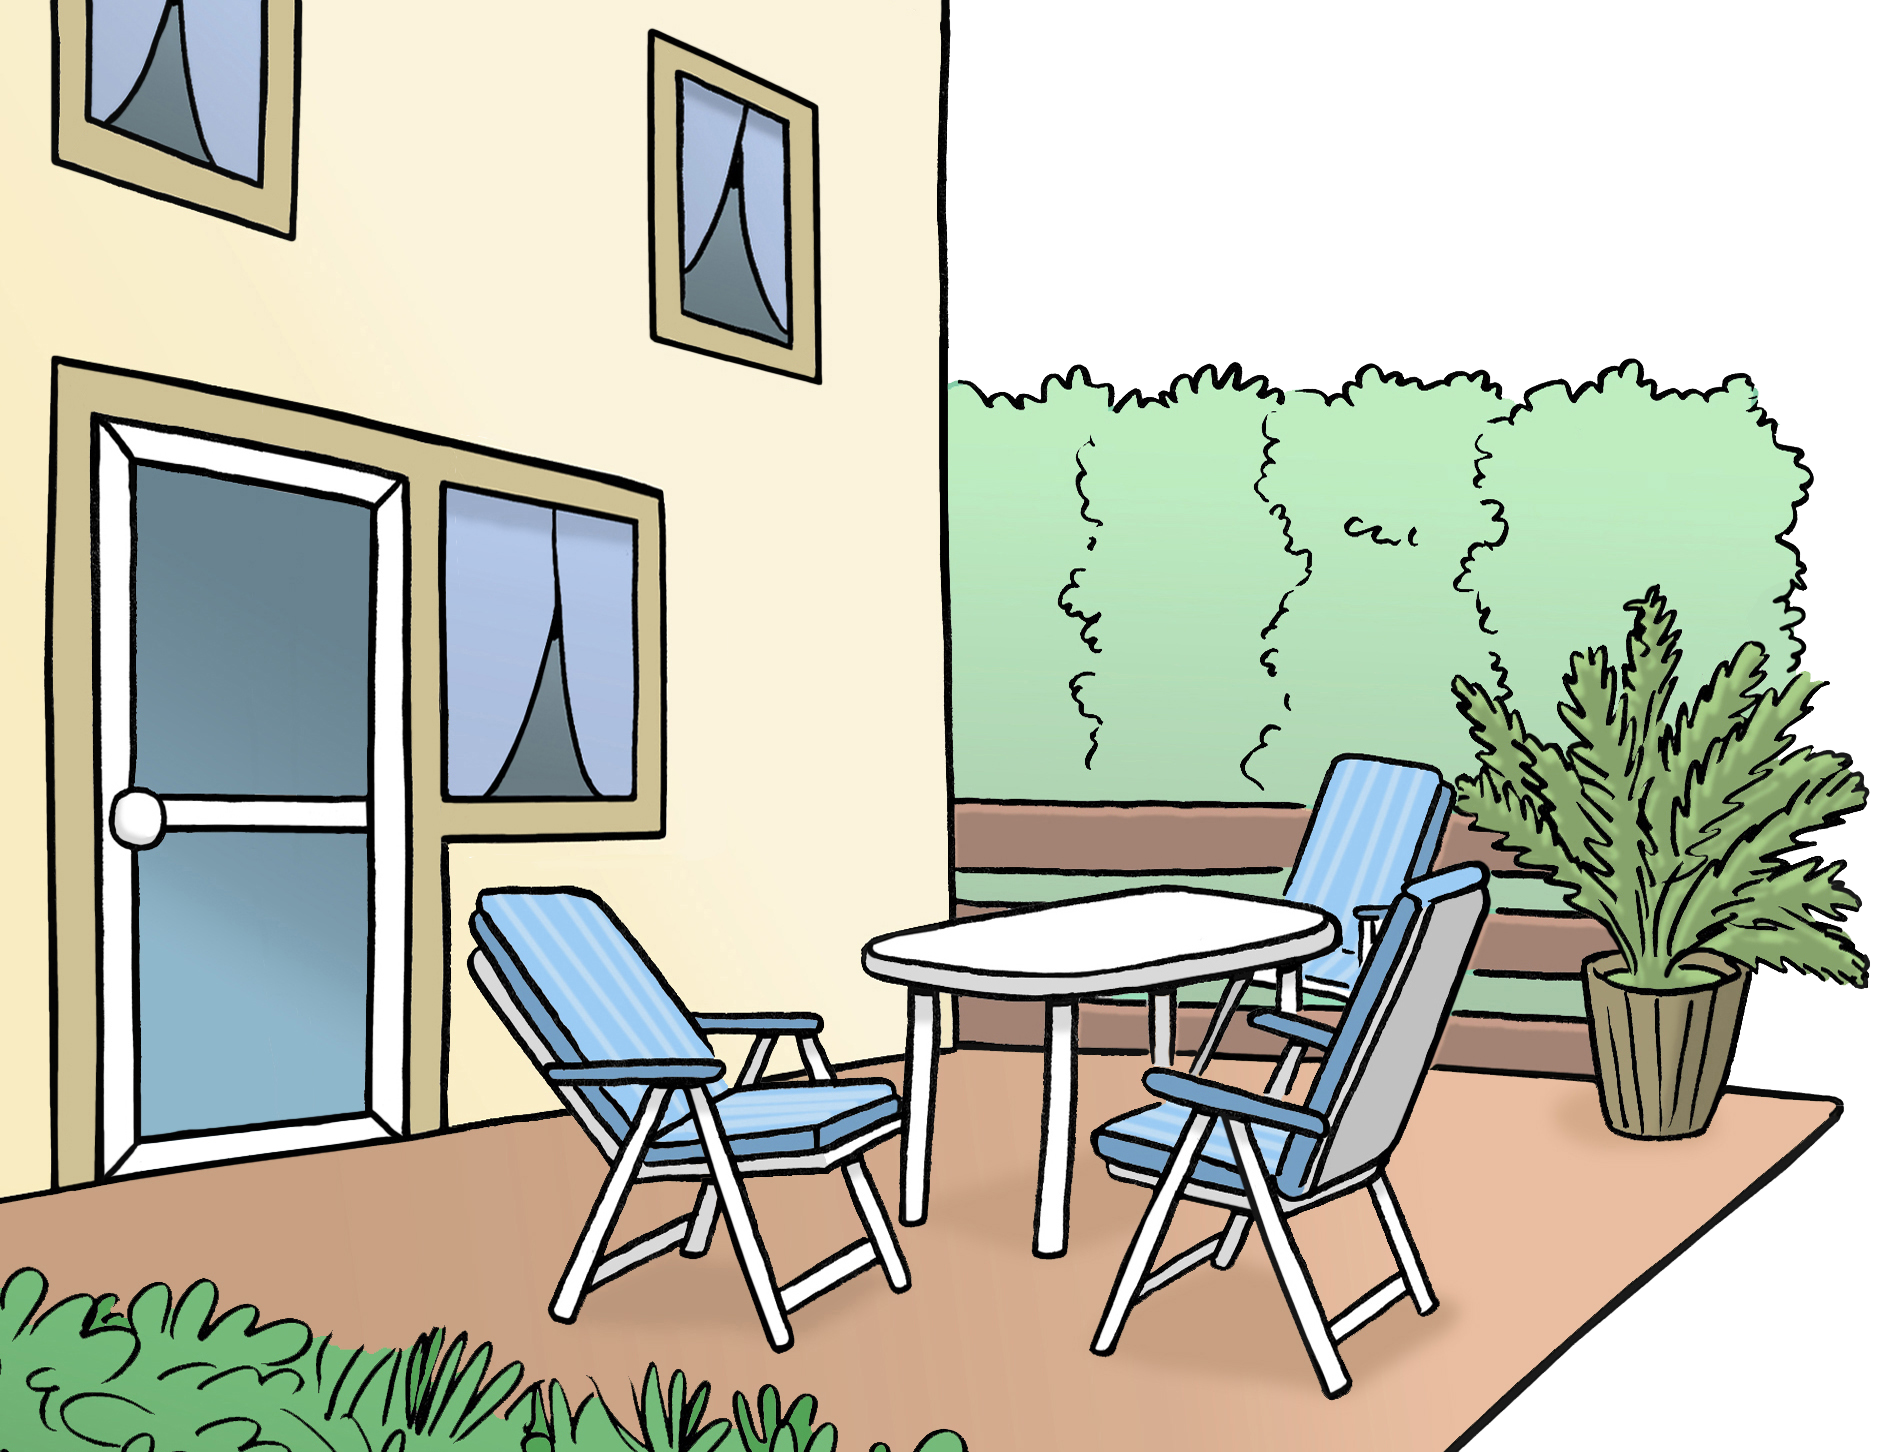 Bildbeschreibung: Ein Haus mit Terasse. Auf der Terasse stehen drei Stühle, ein Tisch und eine Pflanze.